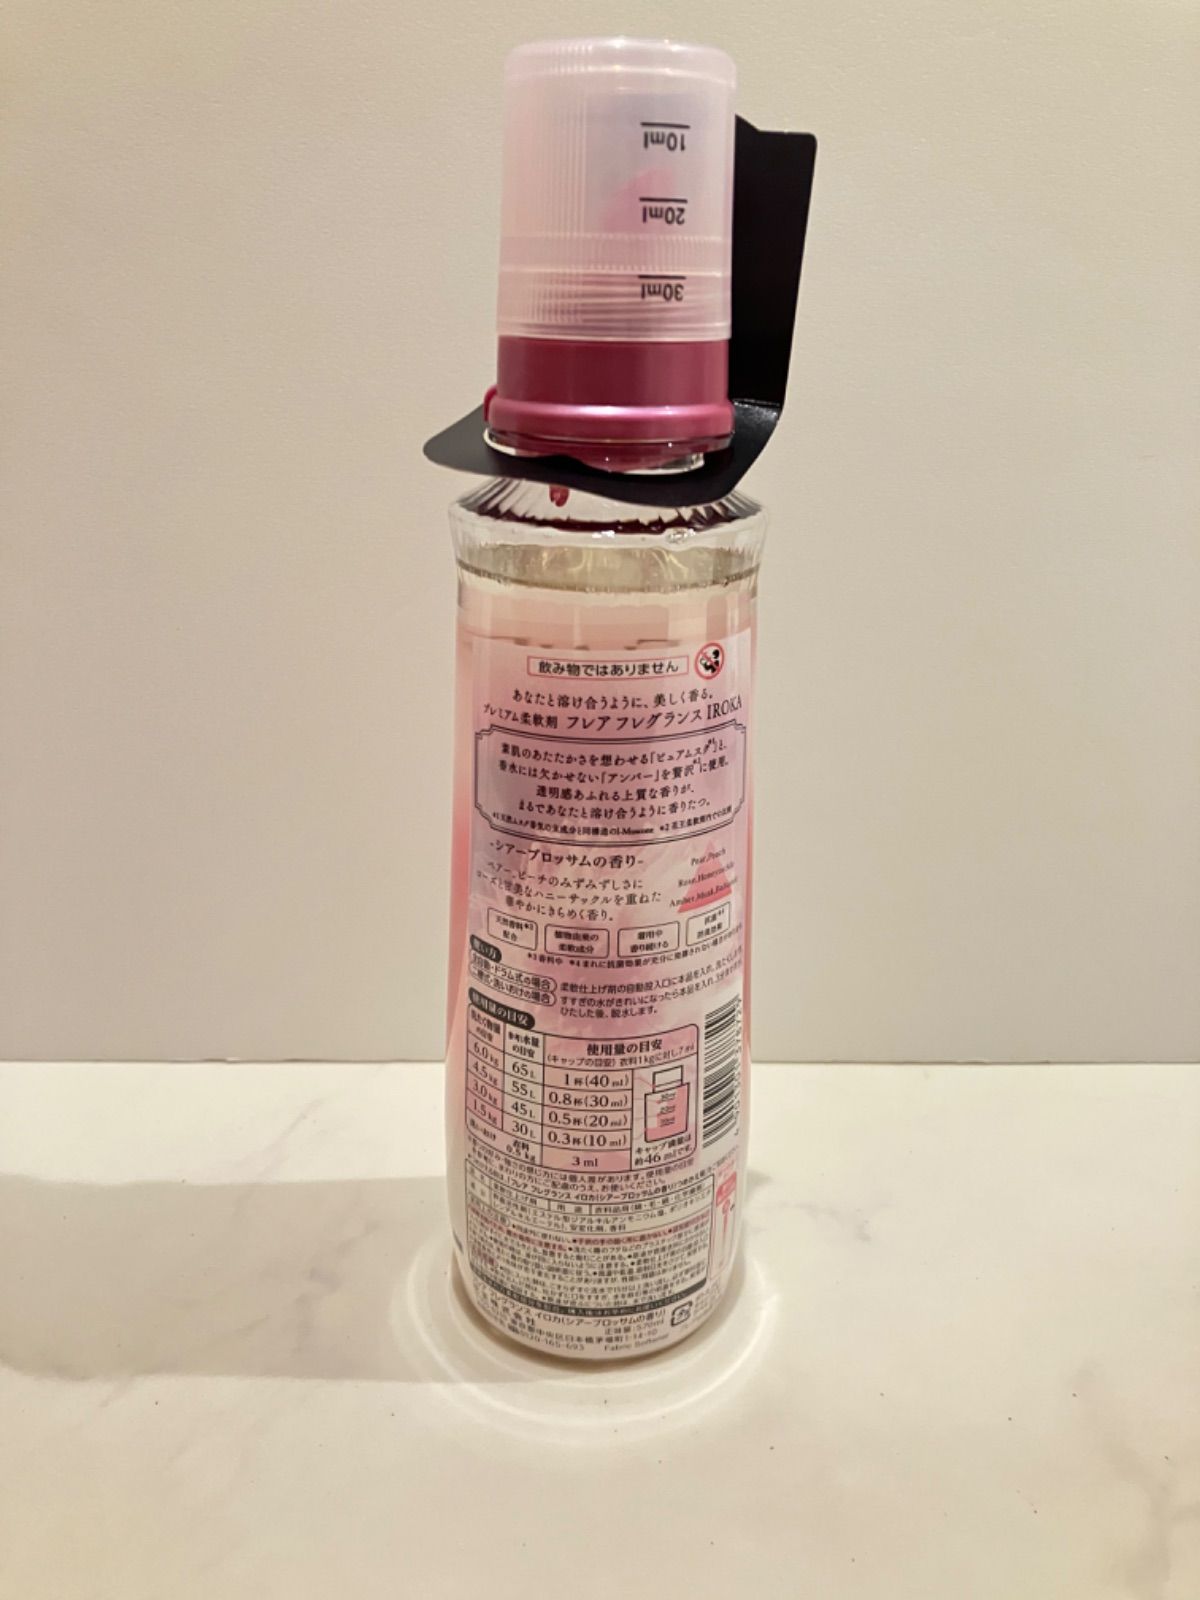 新品未使用】 IROKA シアーブロッサムの香り 本体570ml ×7 - メルカリShops